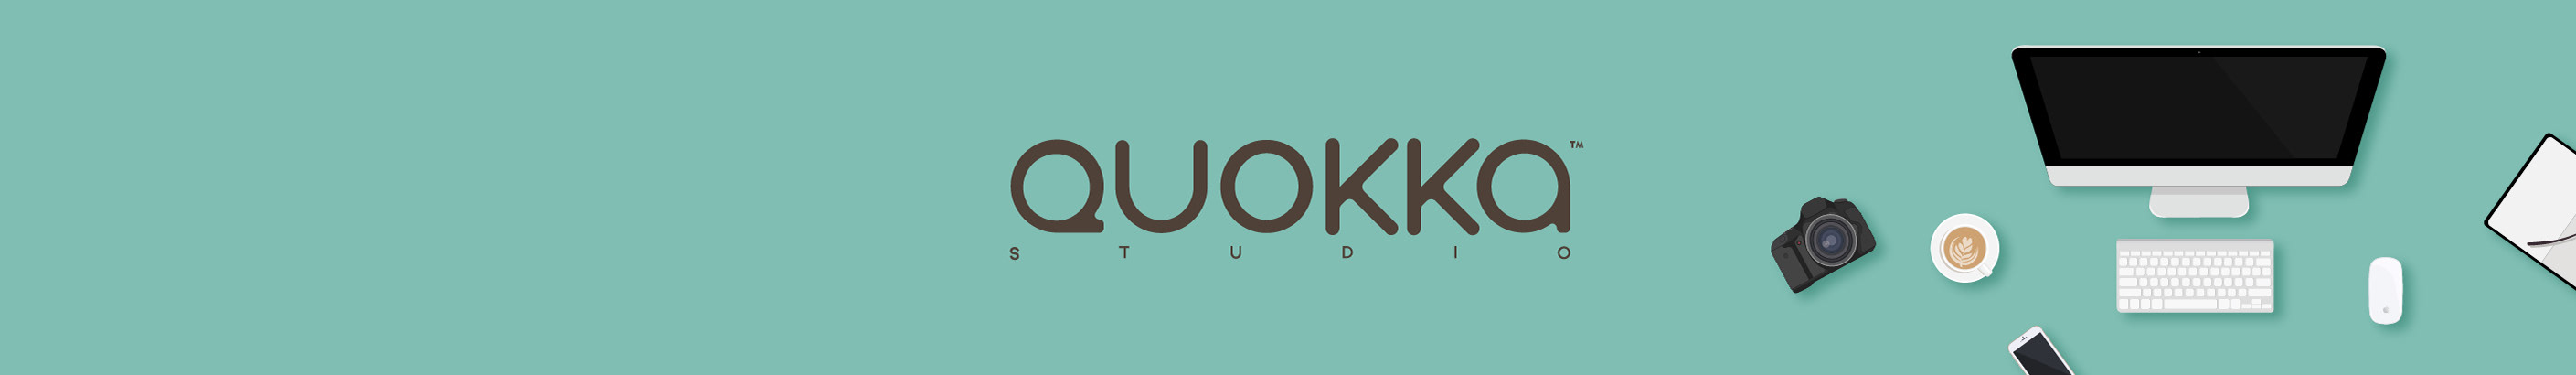 Quokka.Studio profil başlığı